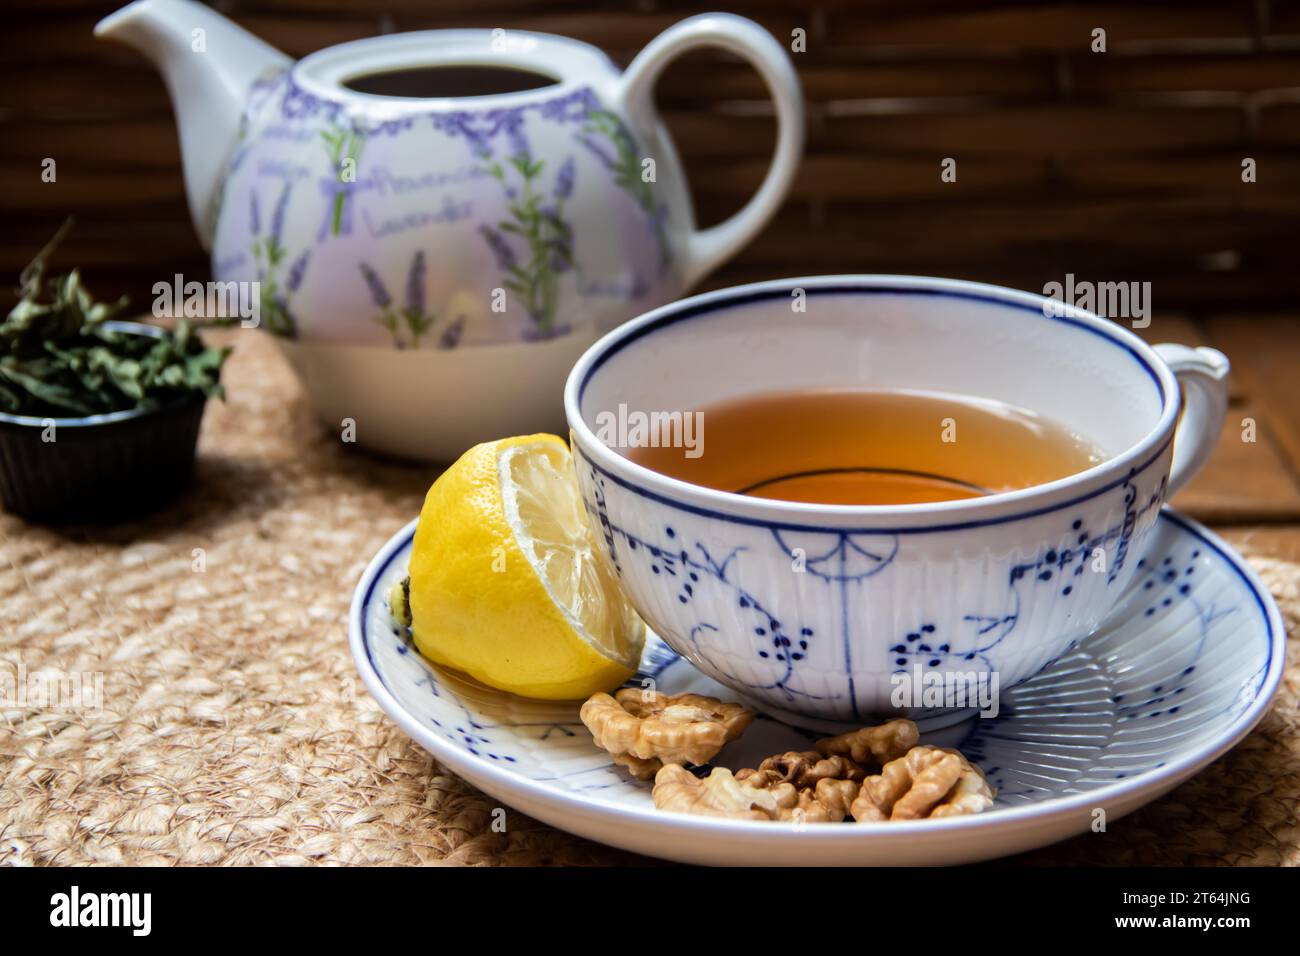 Installation matinale sur une table en bois au balcon, journaux, tasse de thé naturel, théière, miel biologique de la ferme, feuilles de thé vert frais et fruits biologiques Banque D'Images